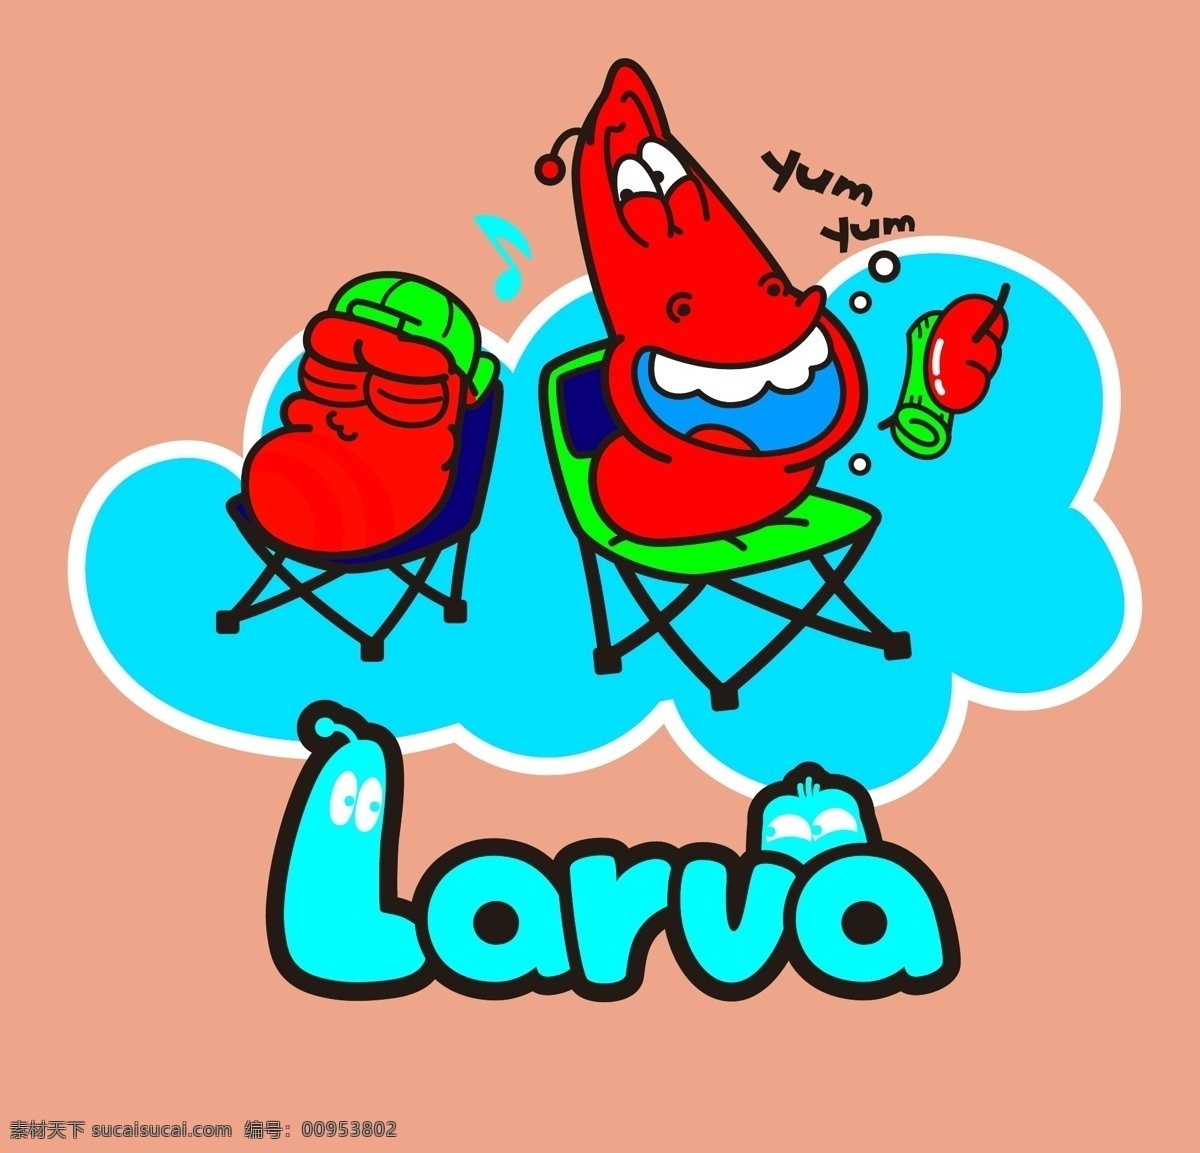 卡通虫子图片 卡通虫子 流氓虫 larva 矢量文件 背景 服装设计 卡通 宝宝喜欢 小男生 卡通共享图 动漫动画